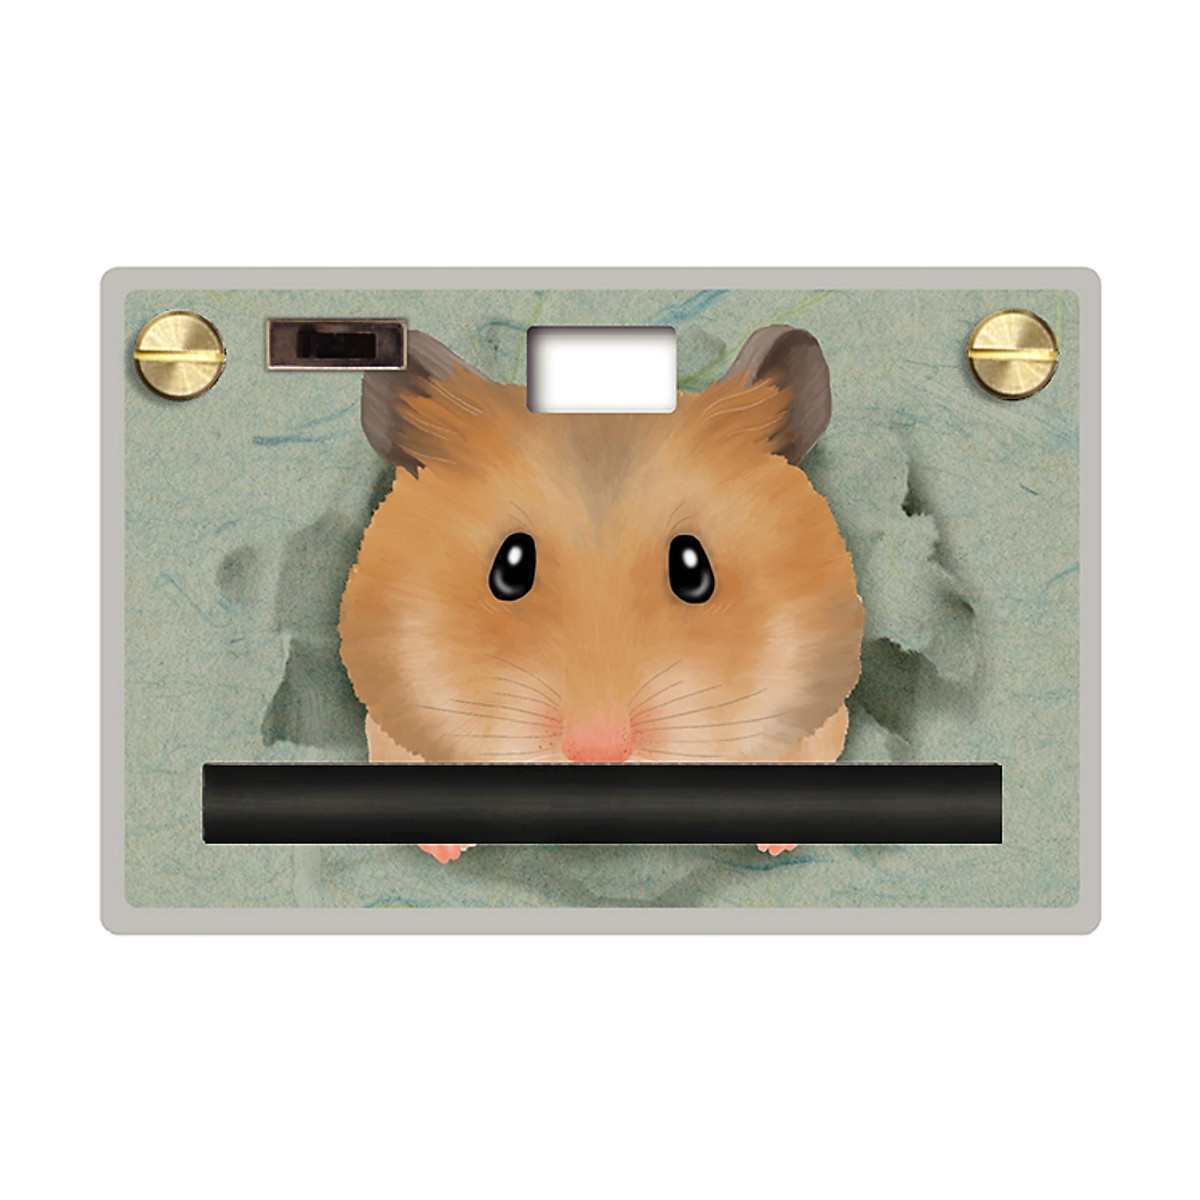 Máy ảnh kỹ thuật số Paper Shoot chính hãng, 16MP CMOS, 10s 1080p Video Fun Series - Hamster